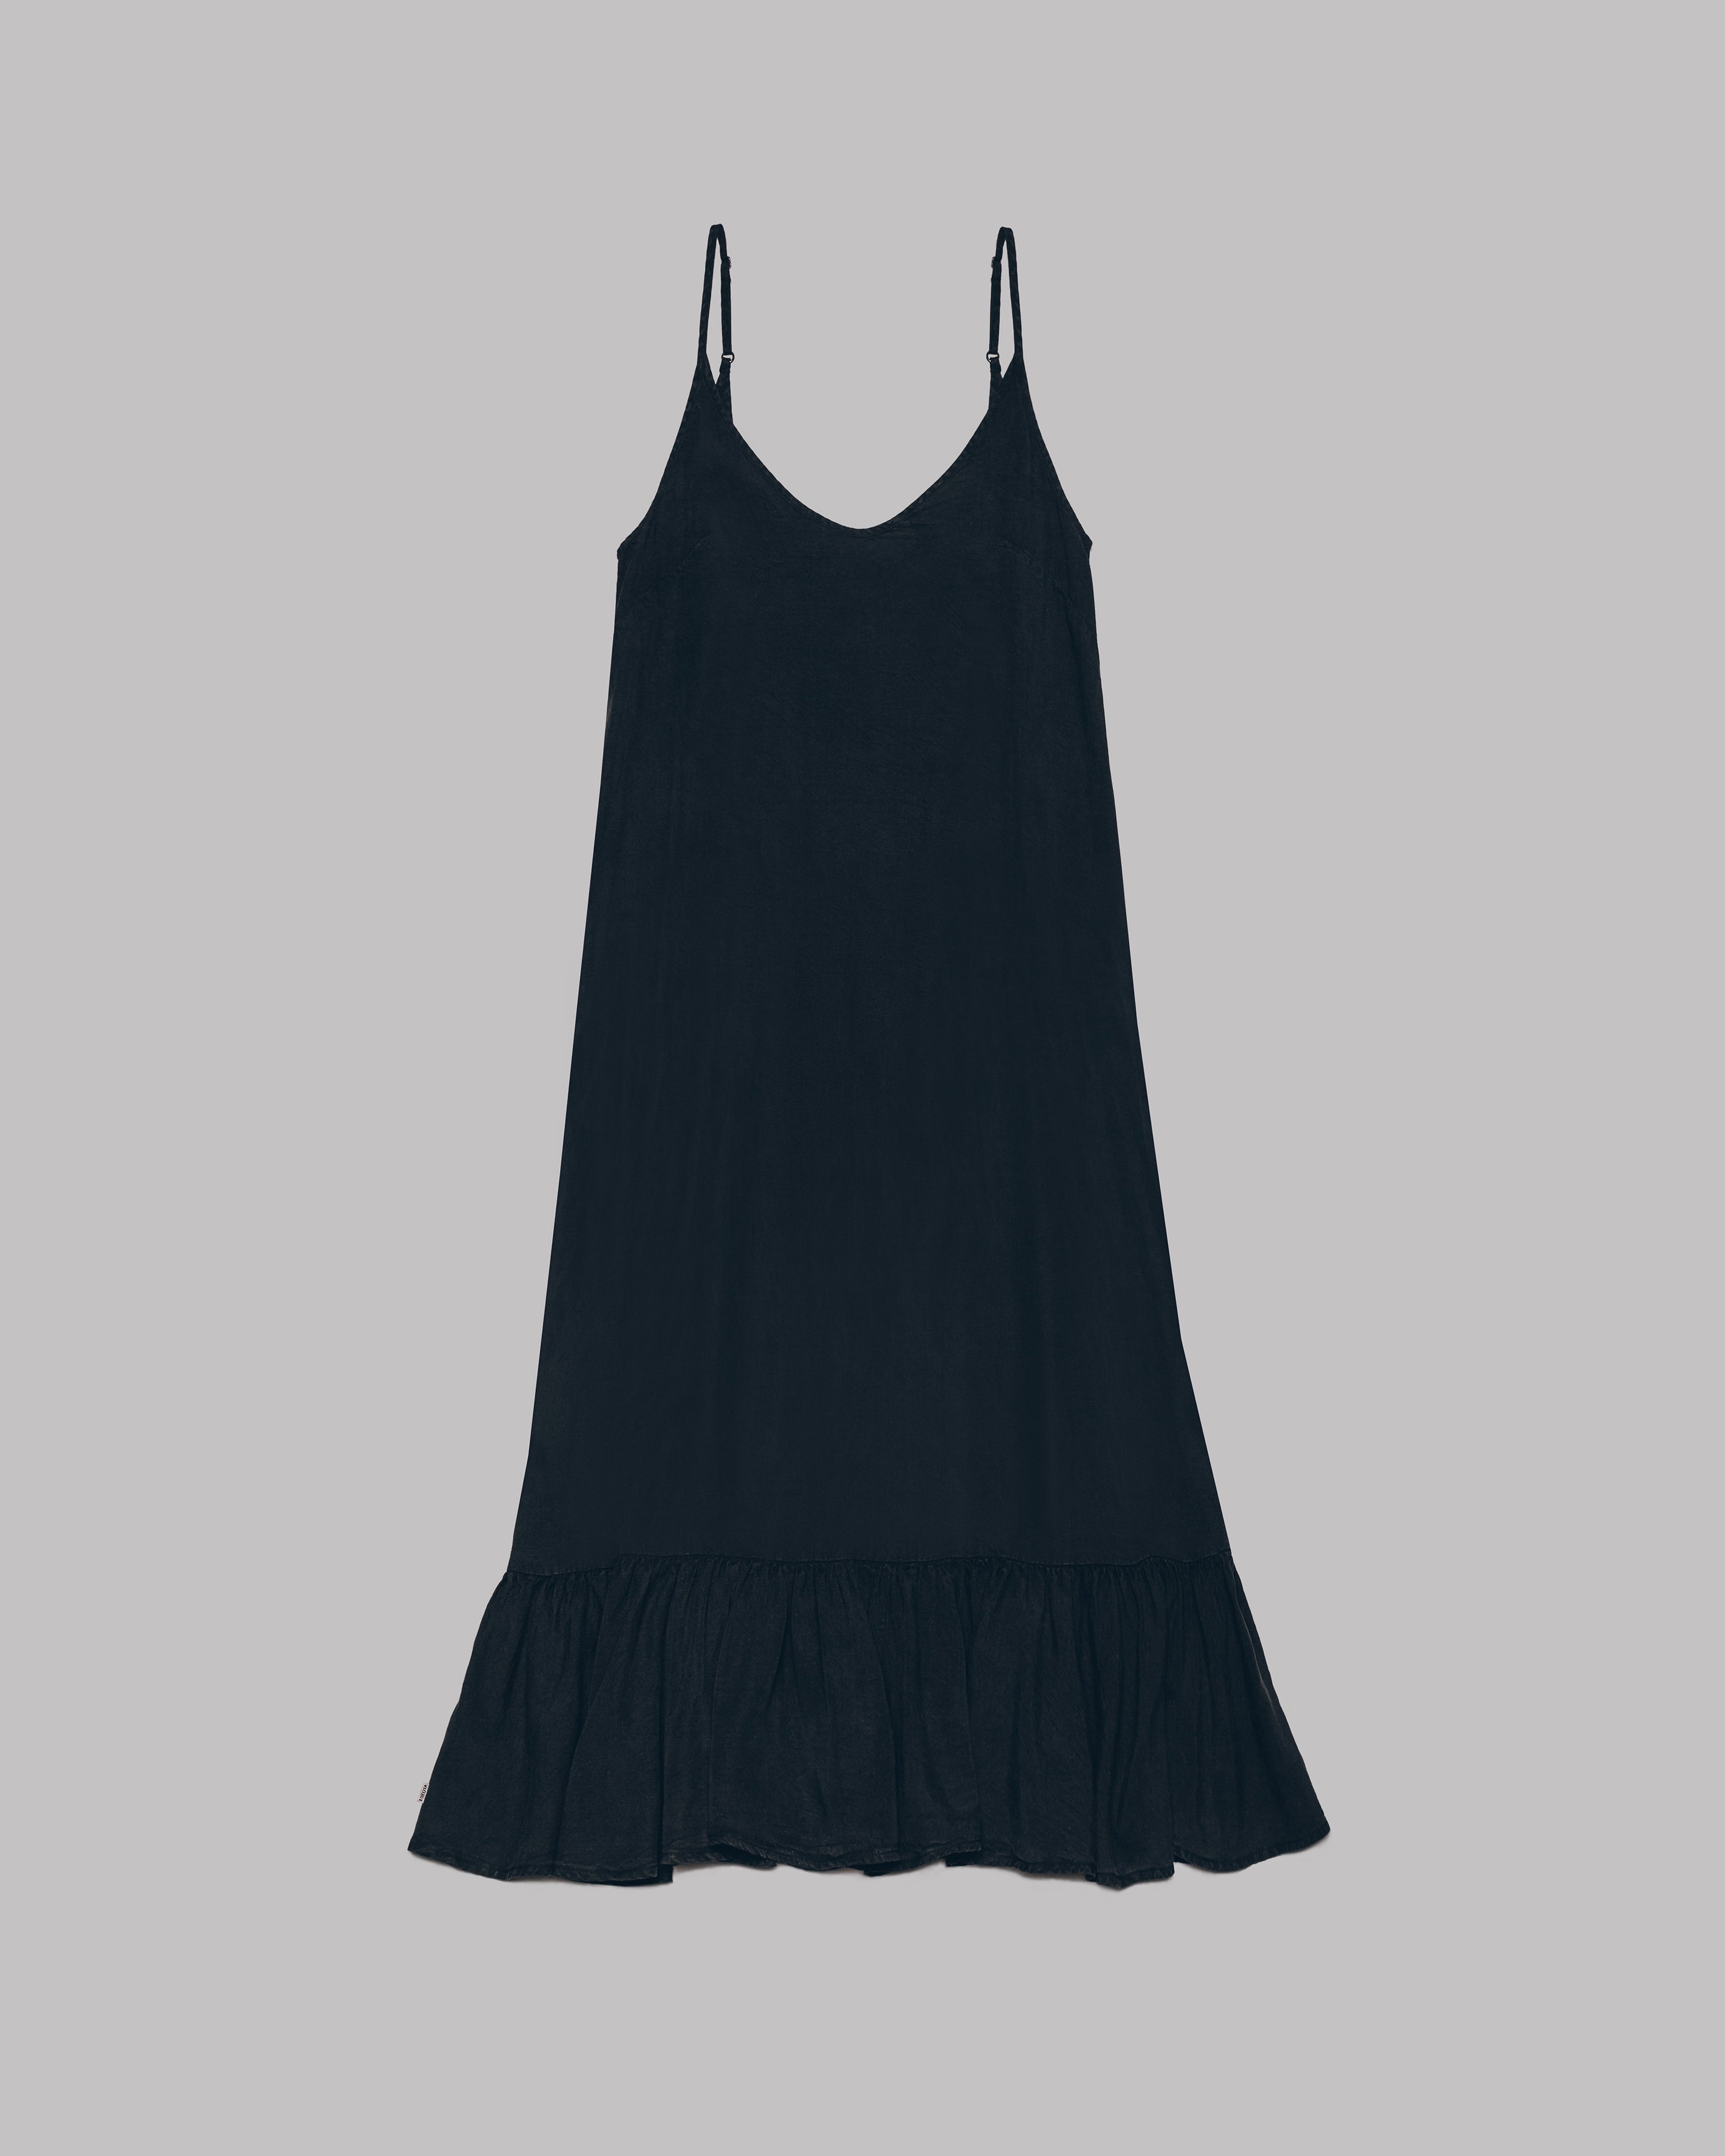 The Dark Long Ruffle Dress